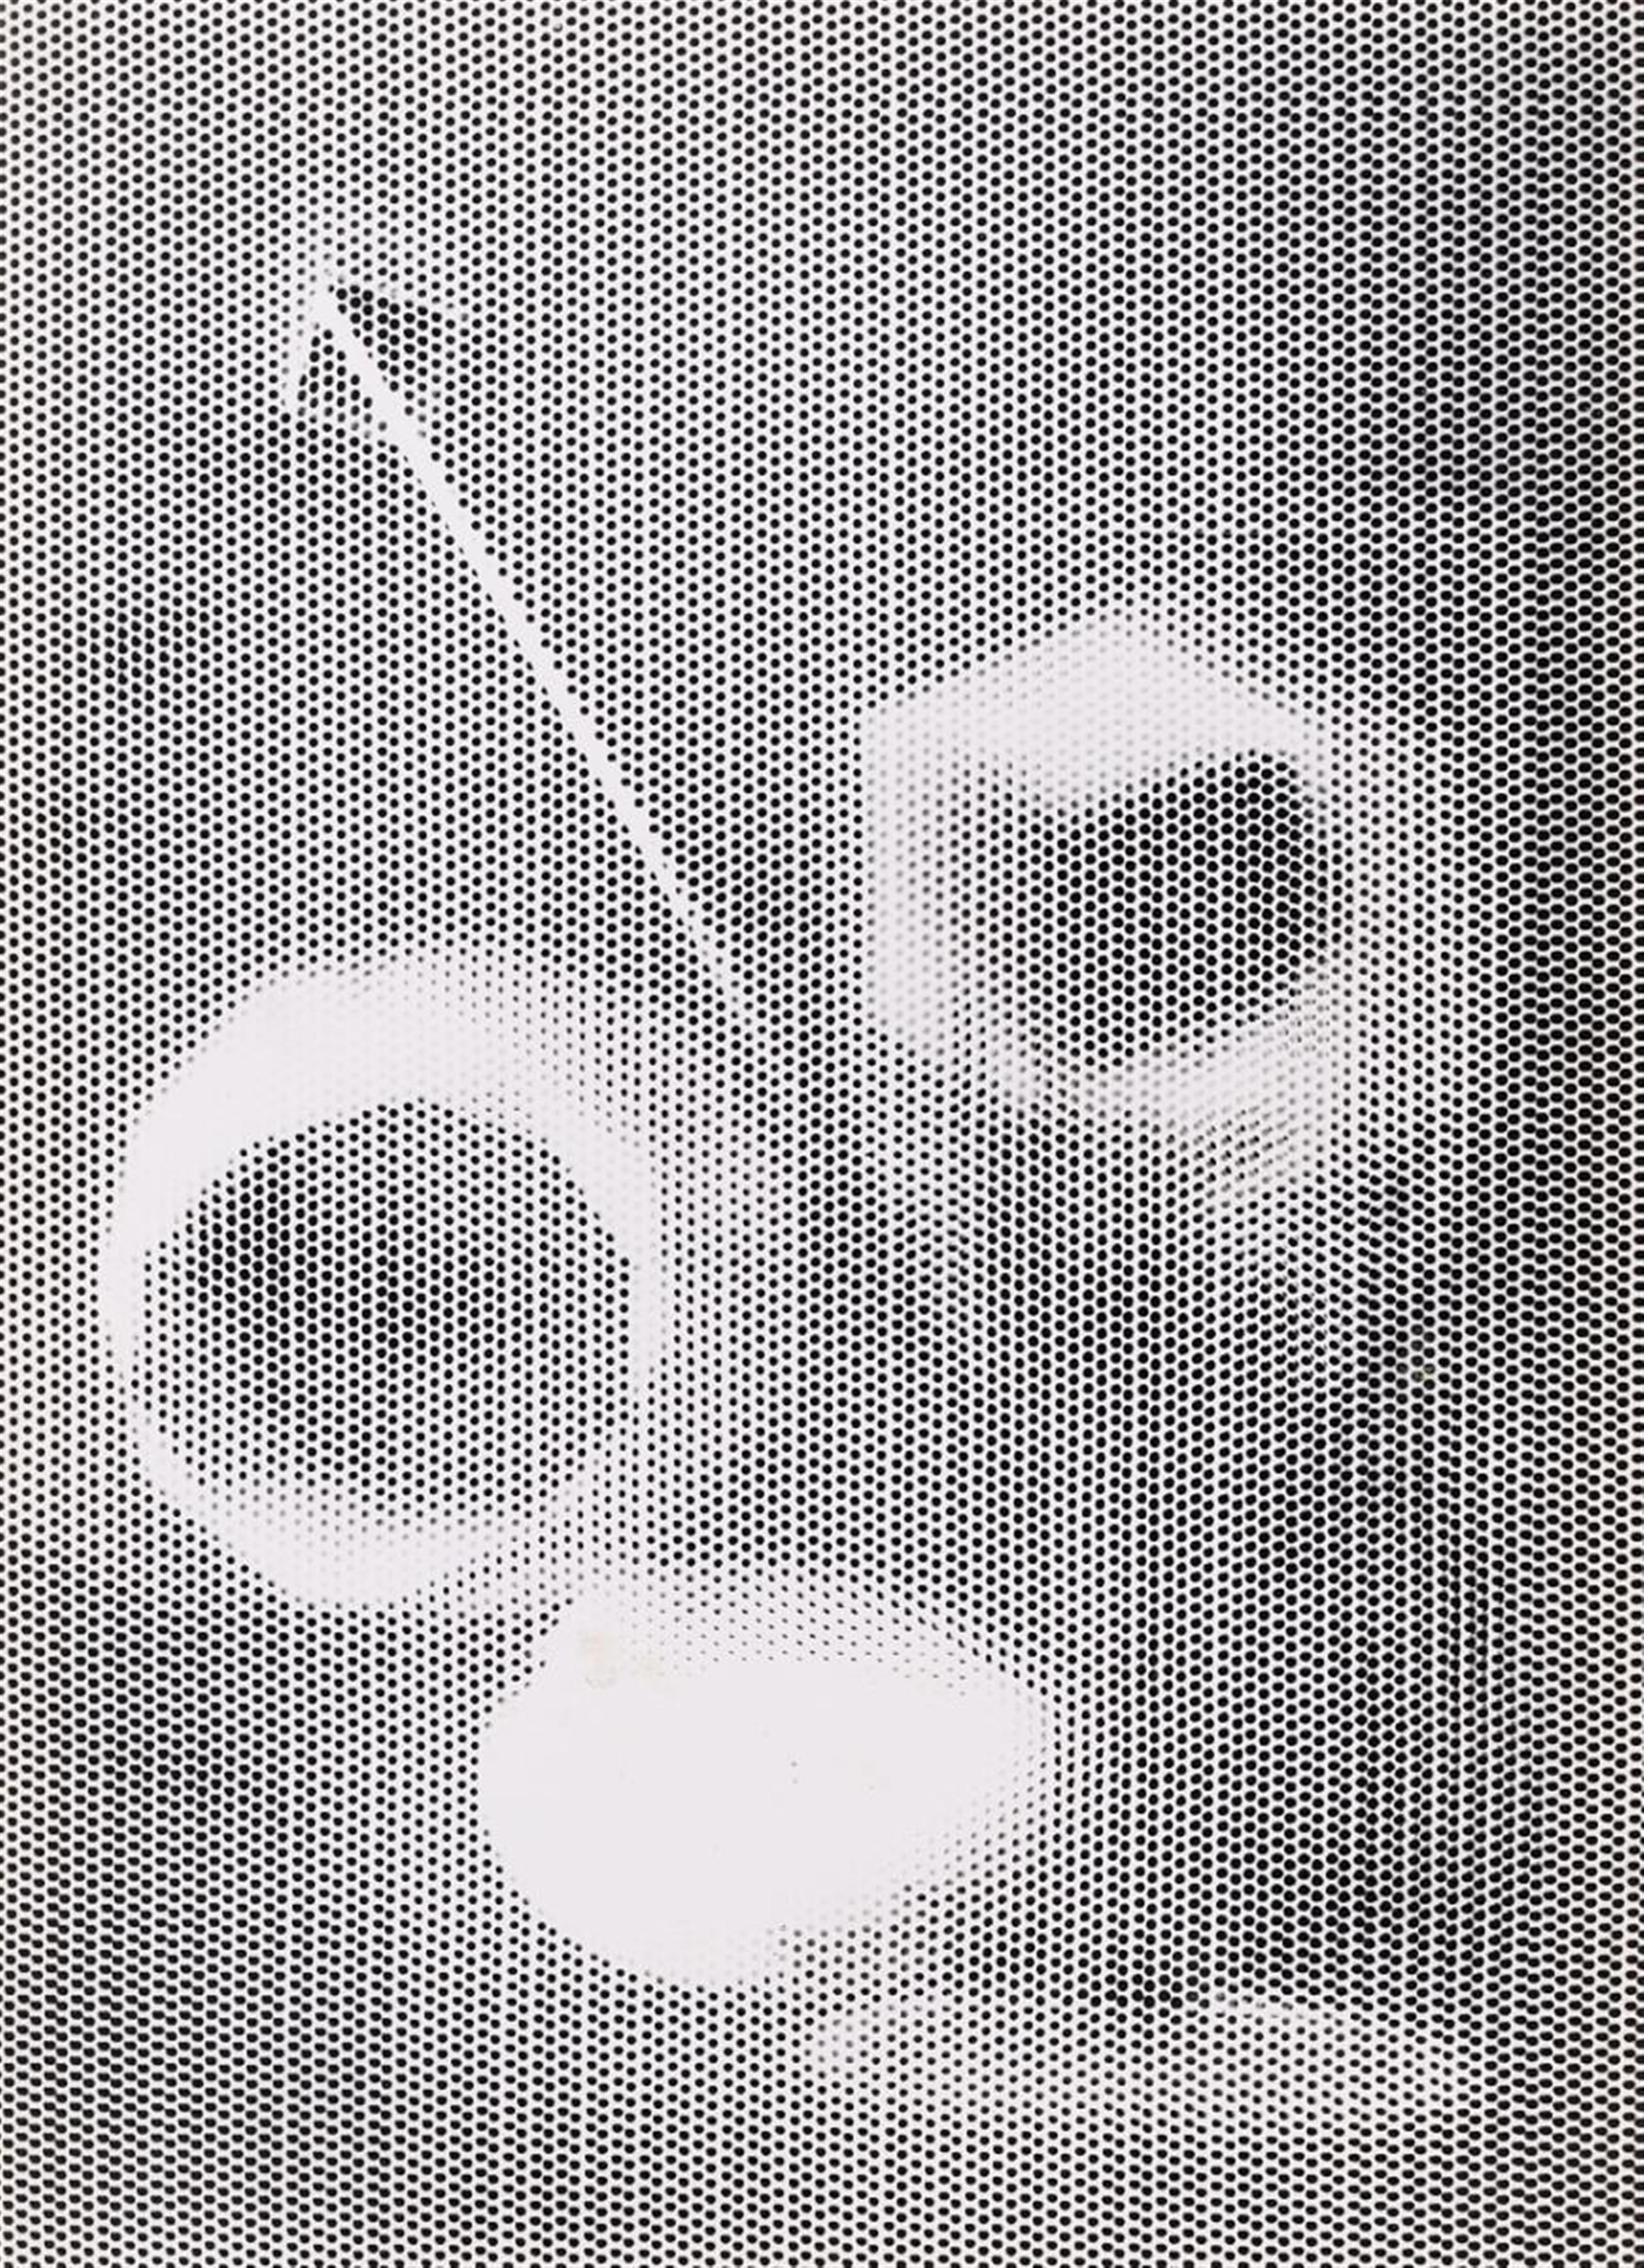 Man Ray - Untitled (Rayographs) - image-4